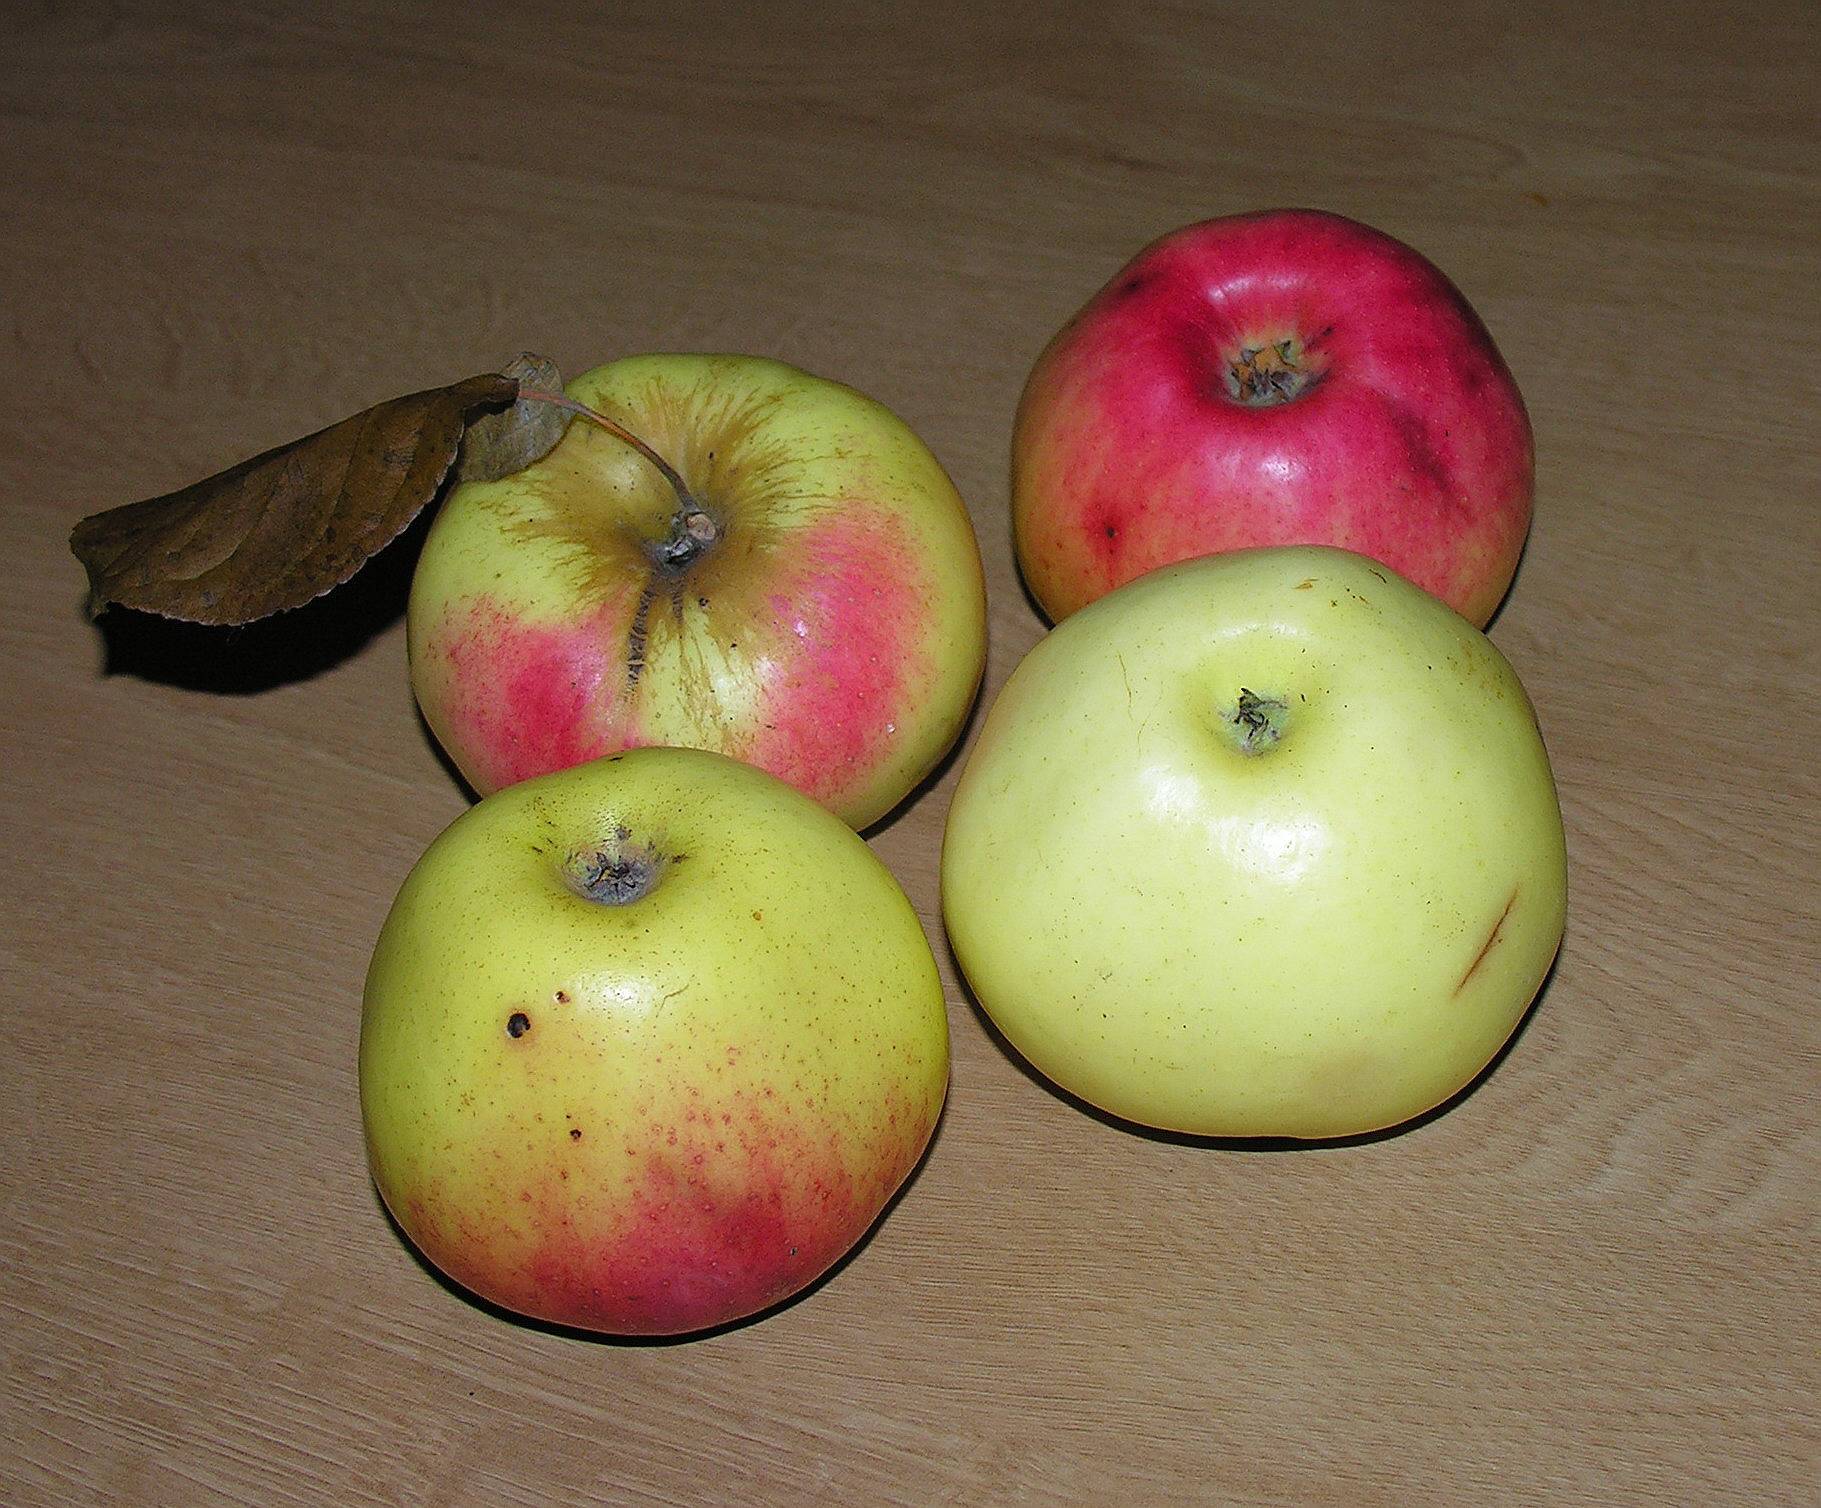 Скороплодная и морозоустойчивая яблоня «павлуша»